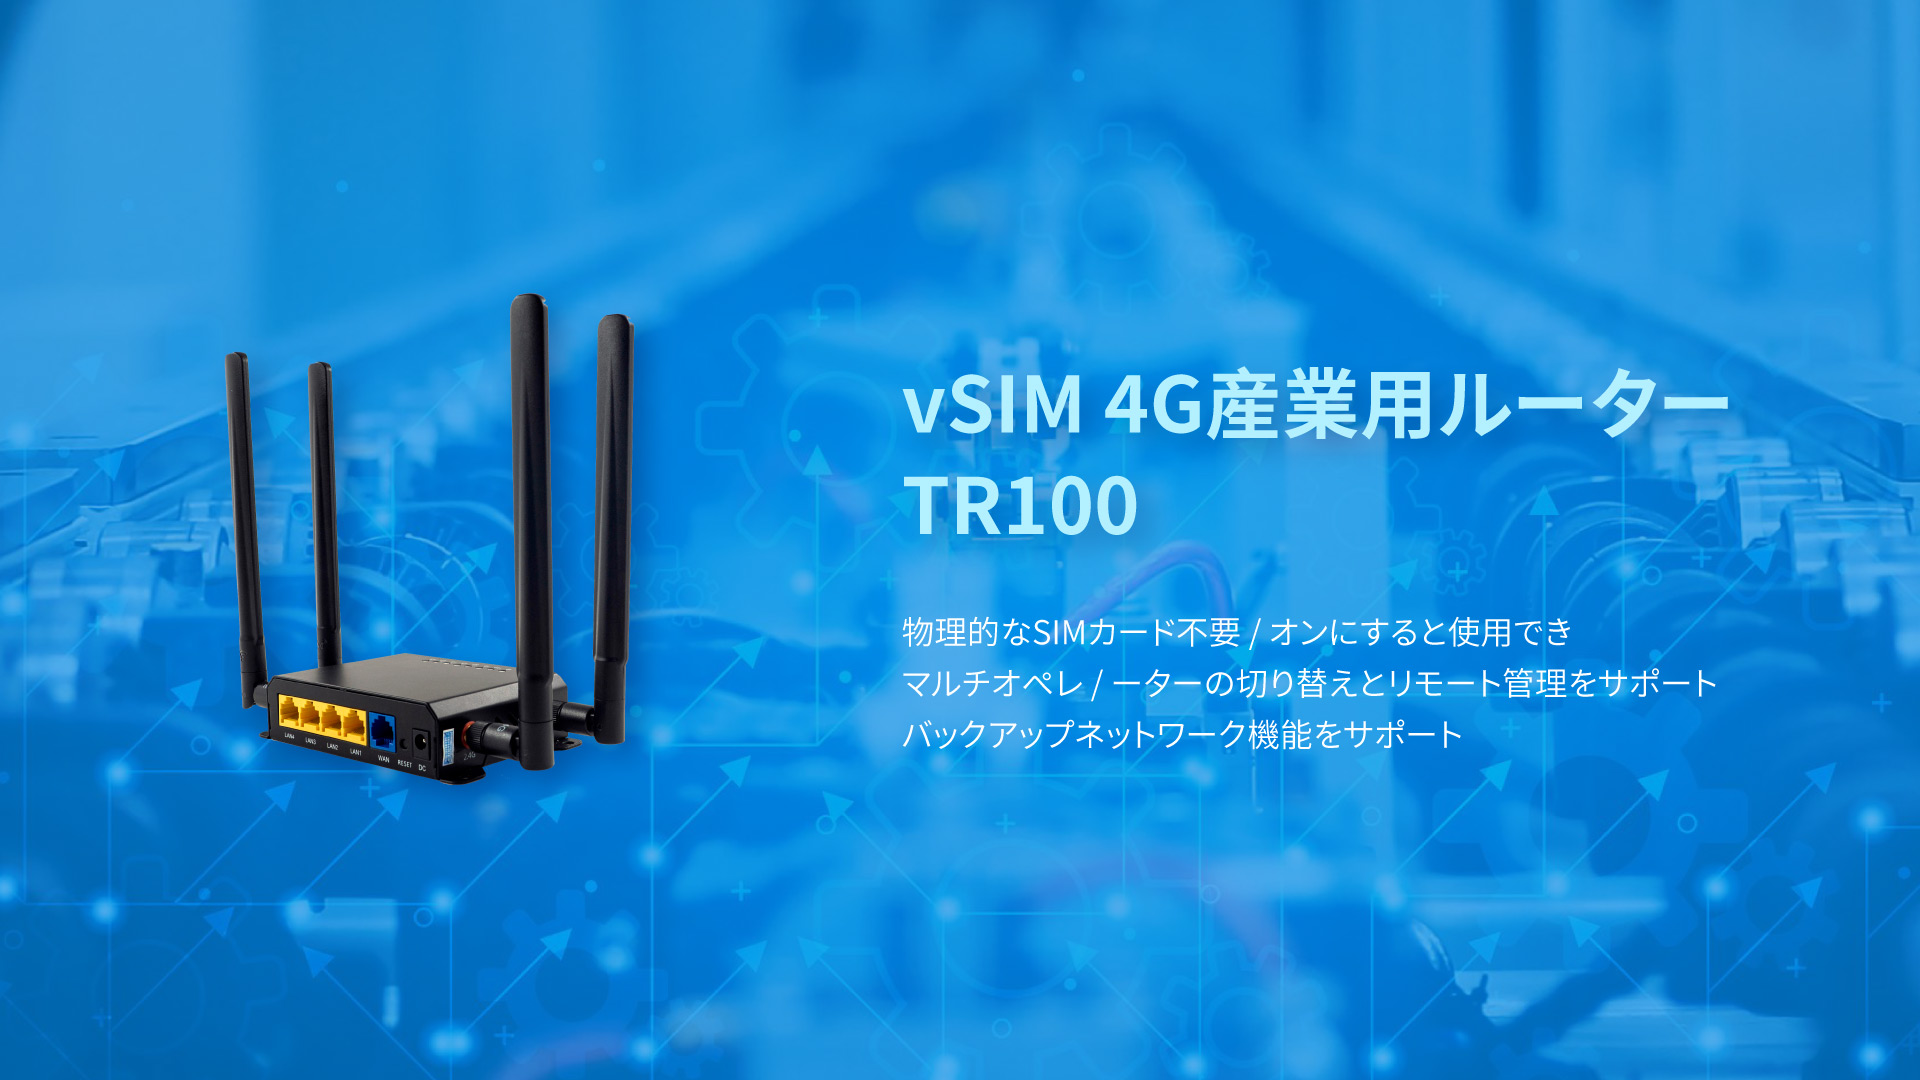 VSIM 4G産業用ルーター TR100